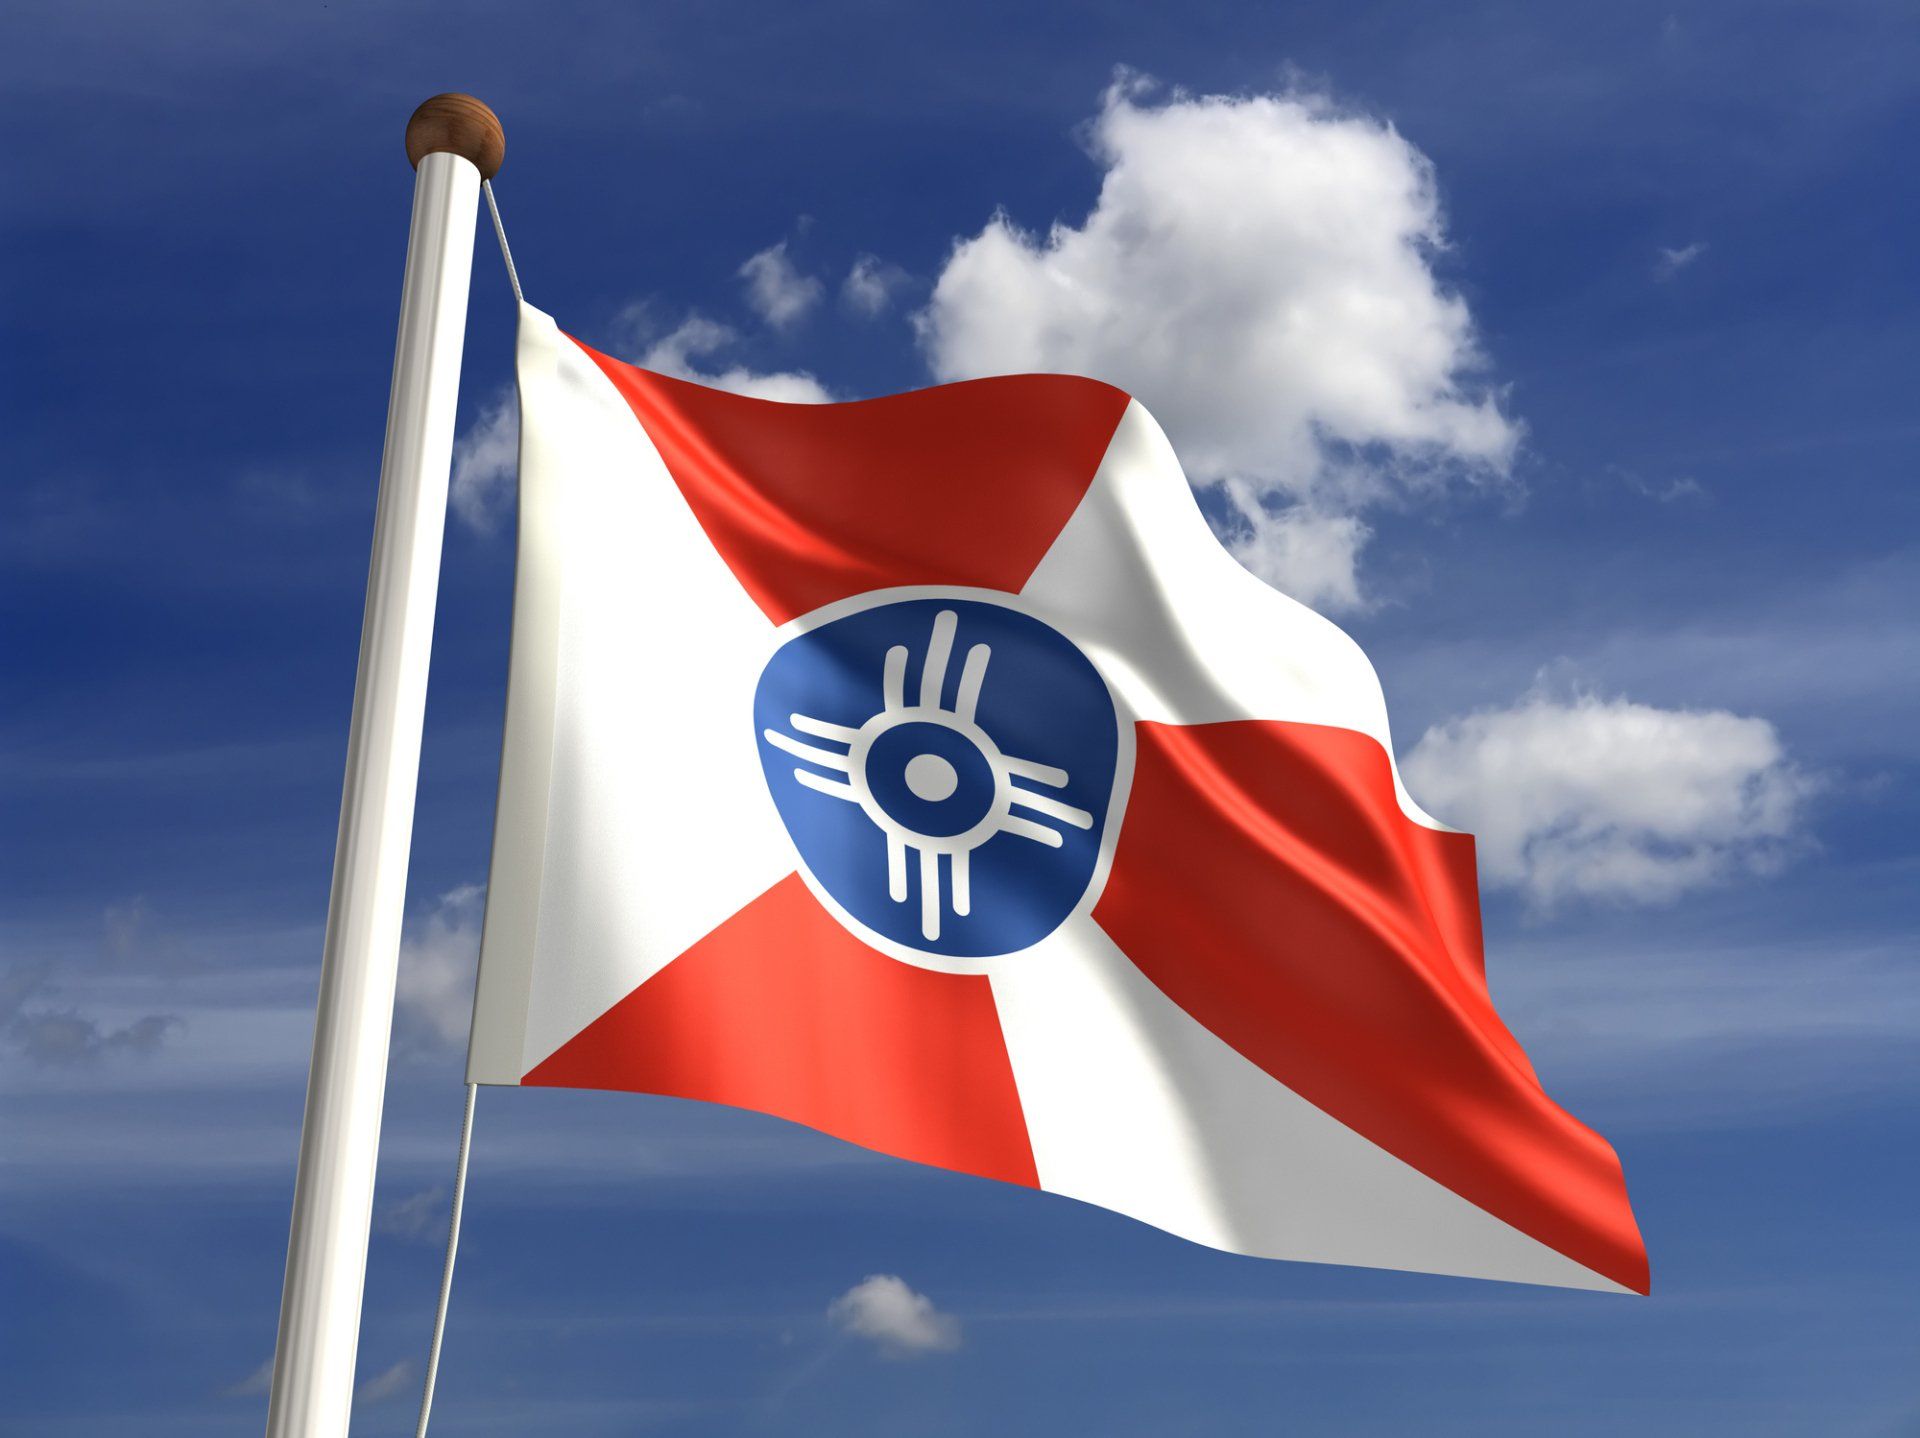 Wichita Flag - Wichita, KS - Superior Roofing